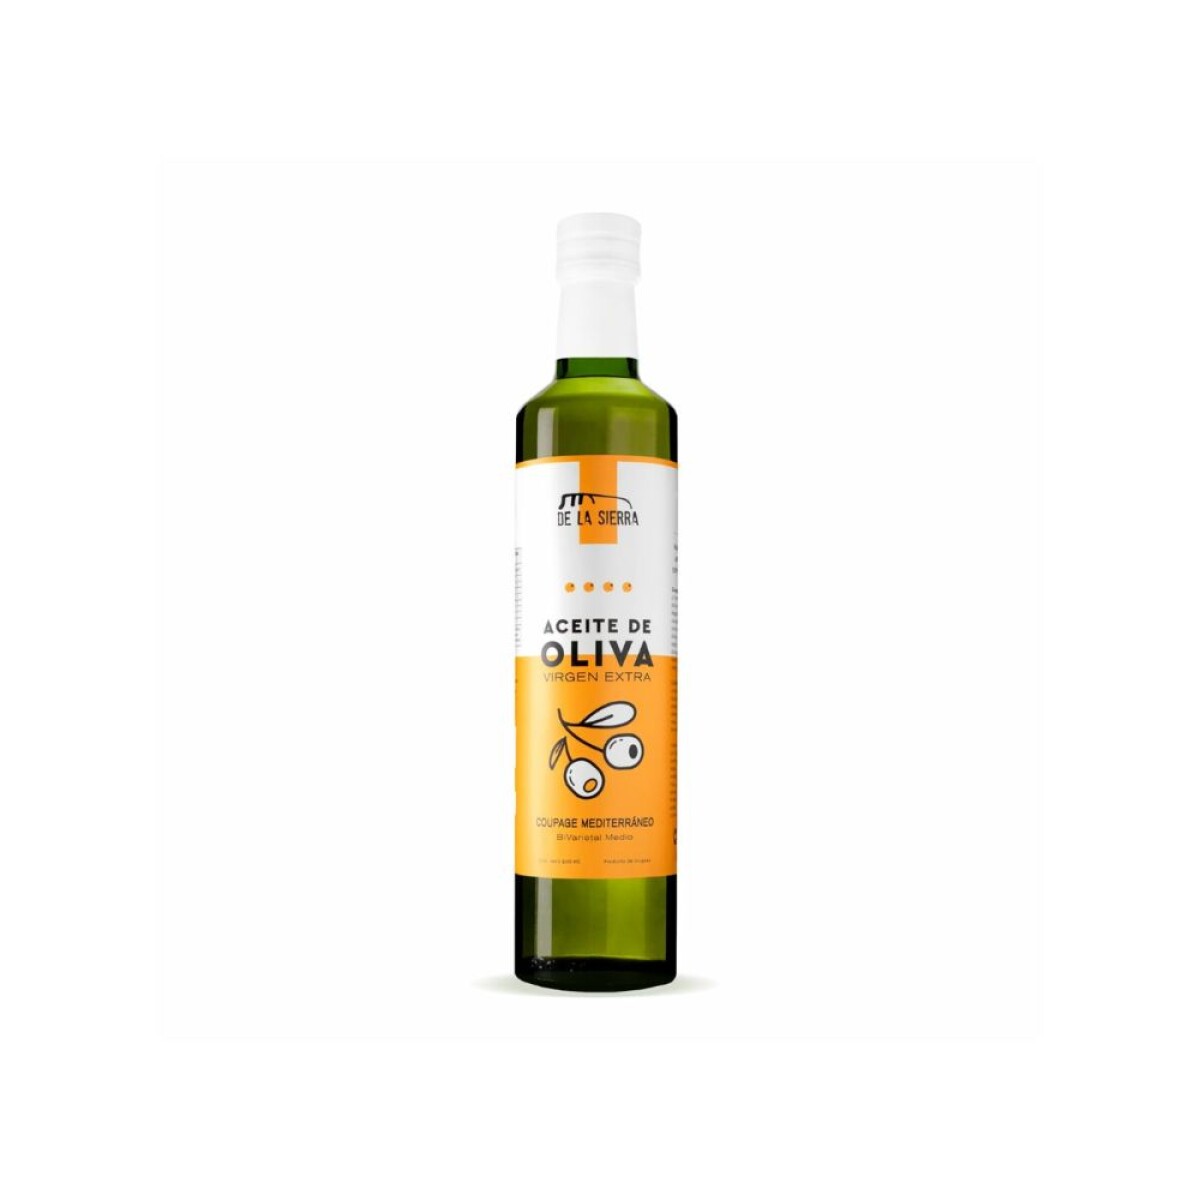 Aceite de oliva coupage mediterraneo 500ml De la Sierra 